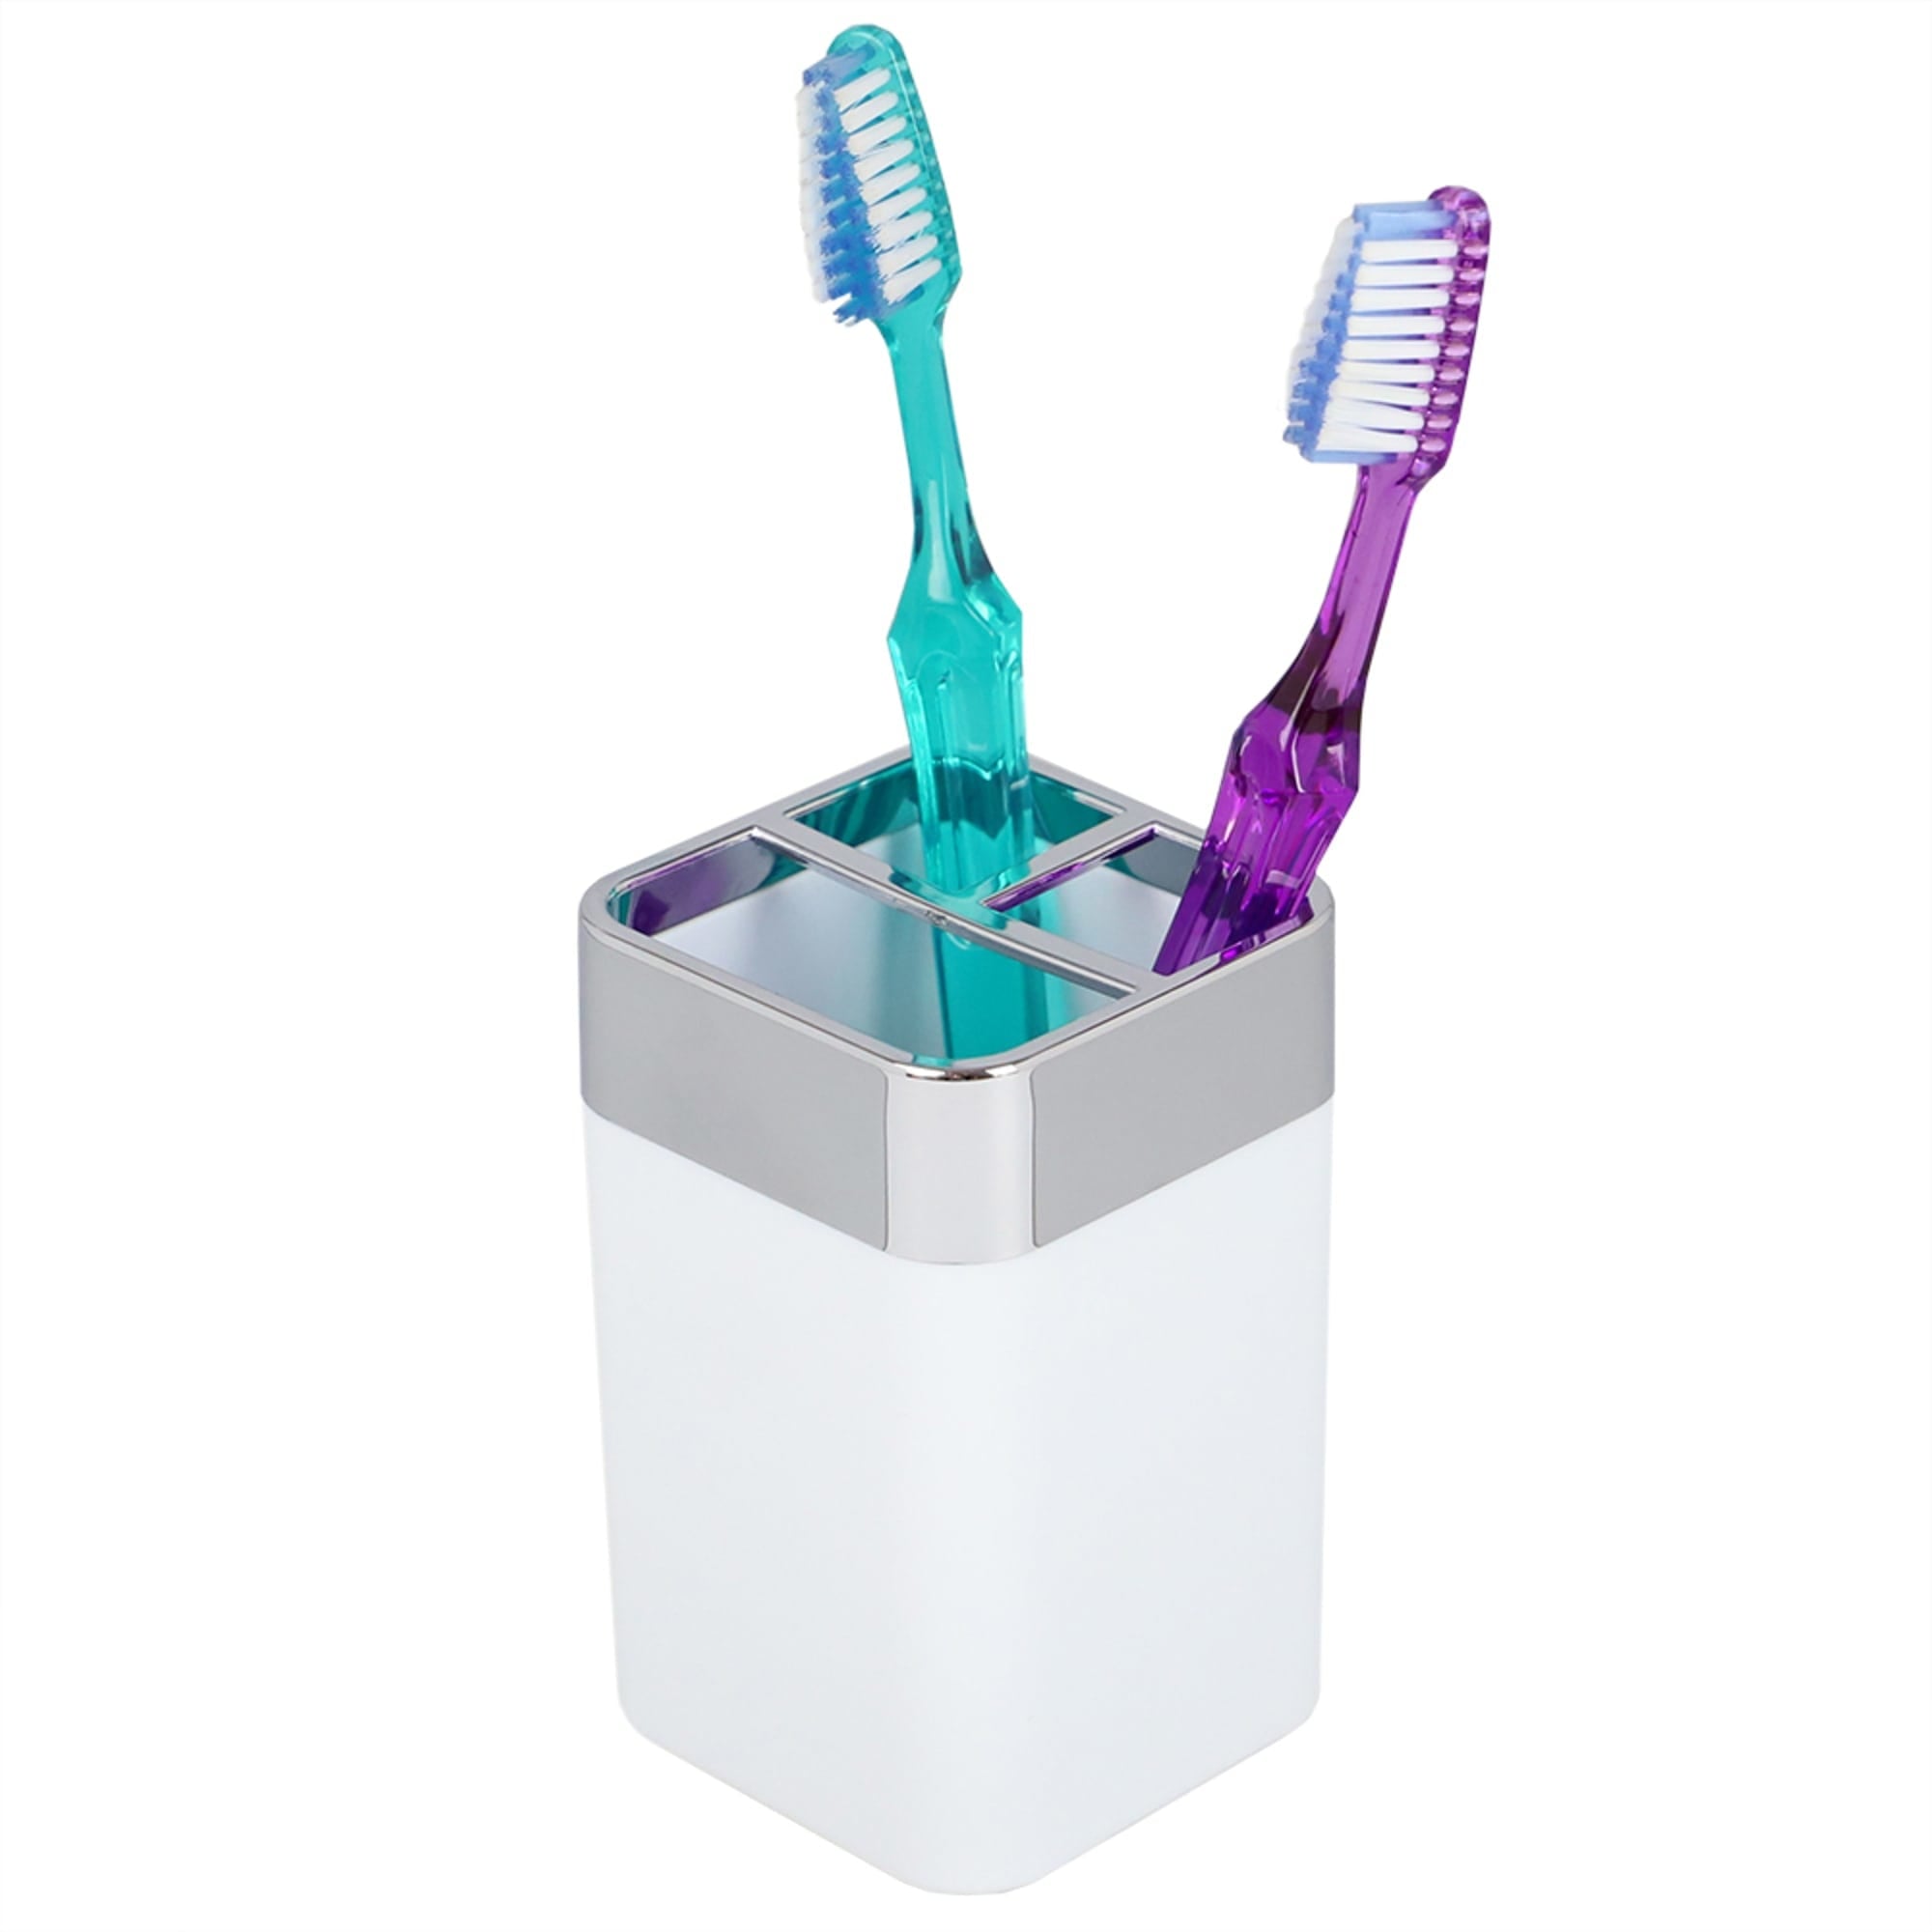 Home Basics Skylar ABS Plastic Toothbrush Holder, White $3.00 EACH, CASE PACK OF 12